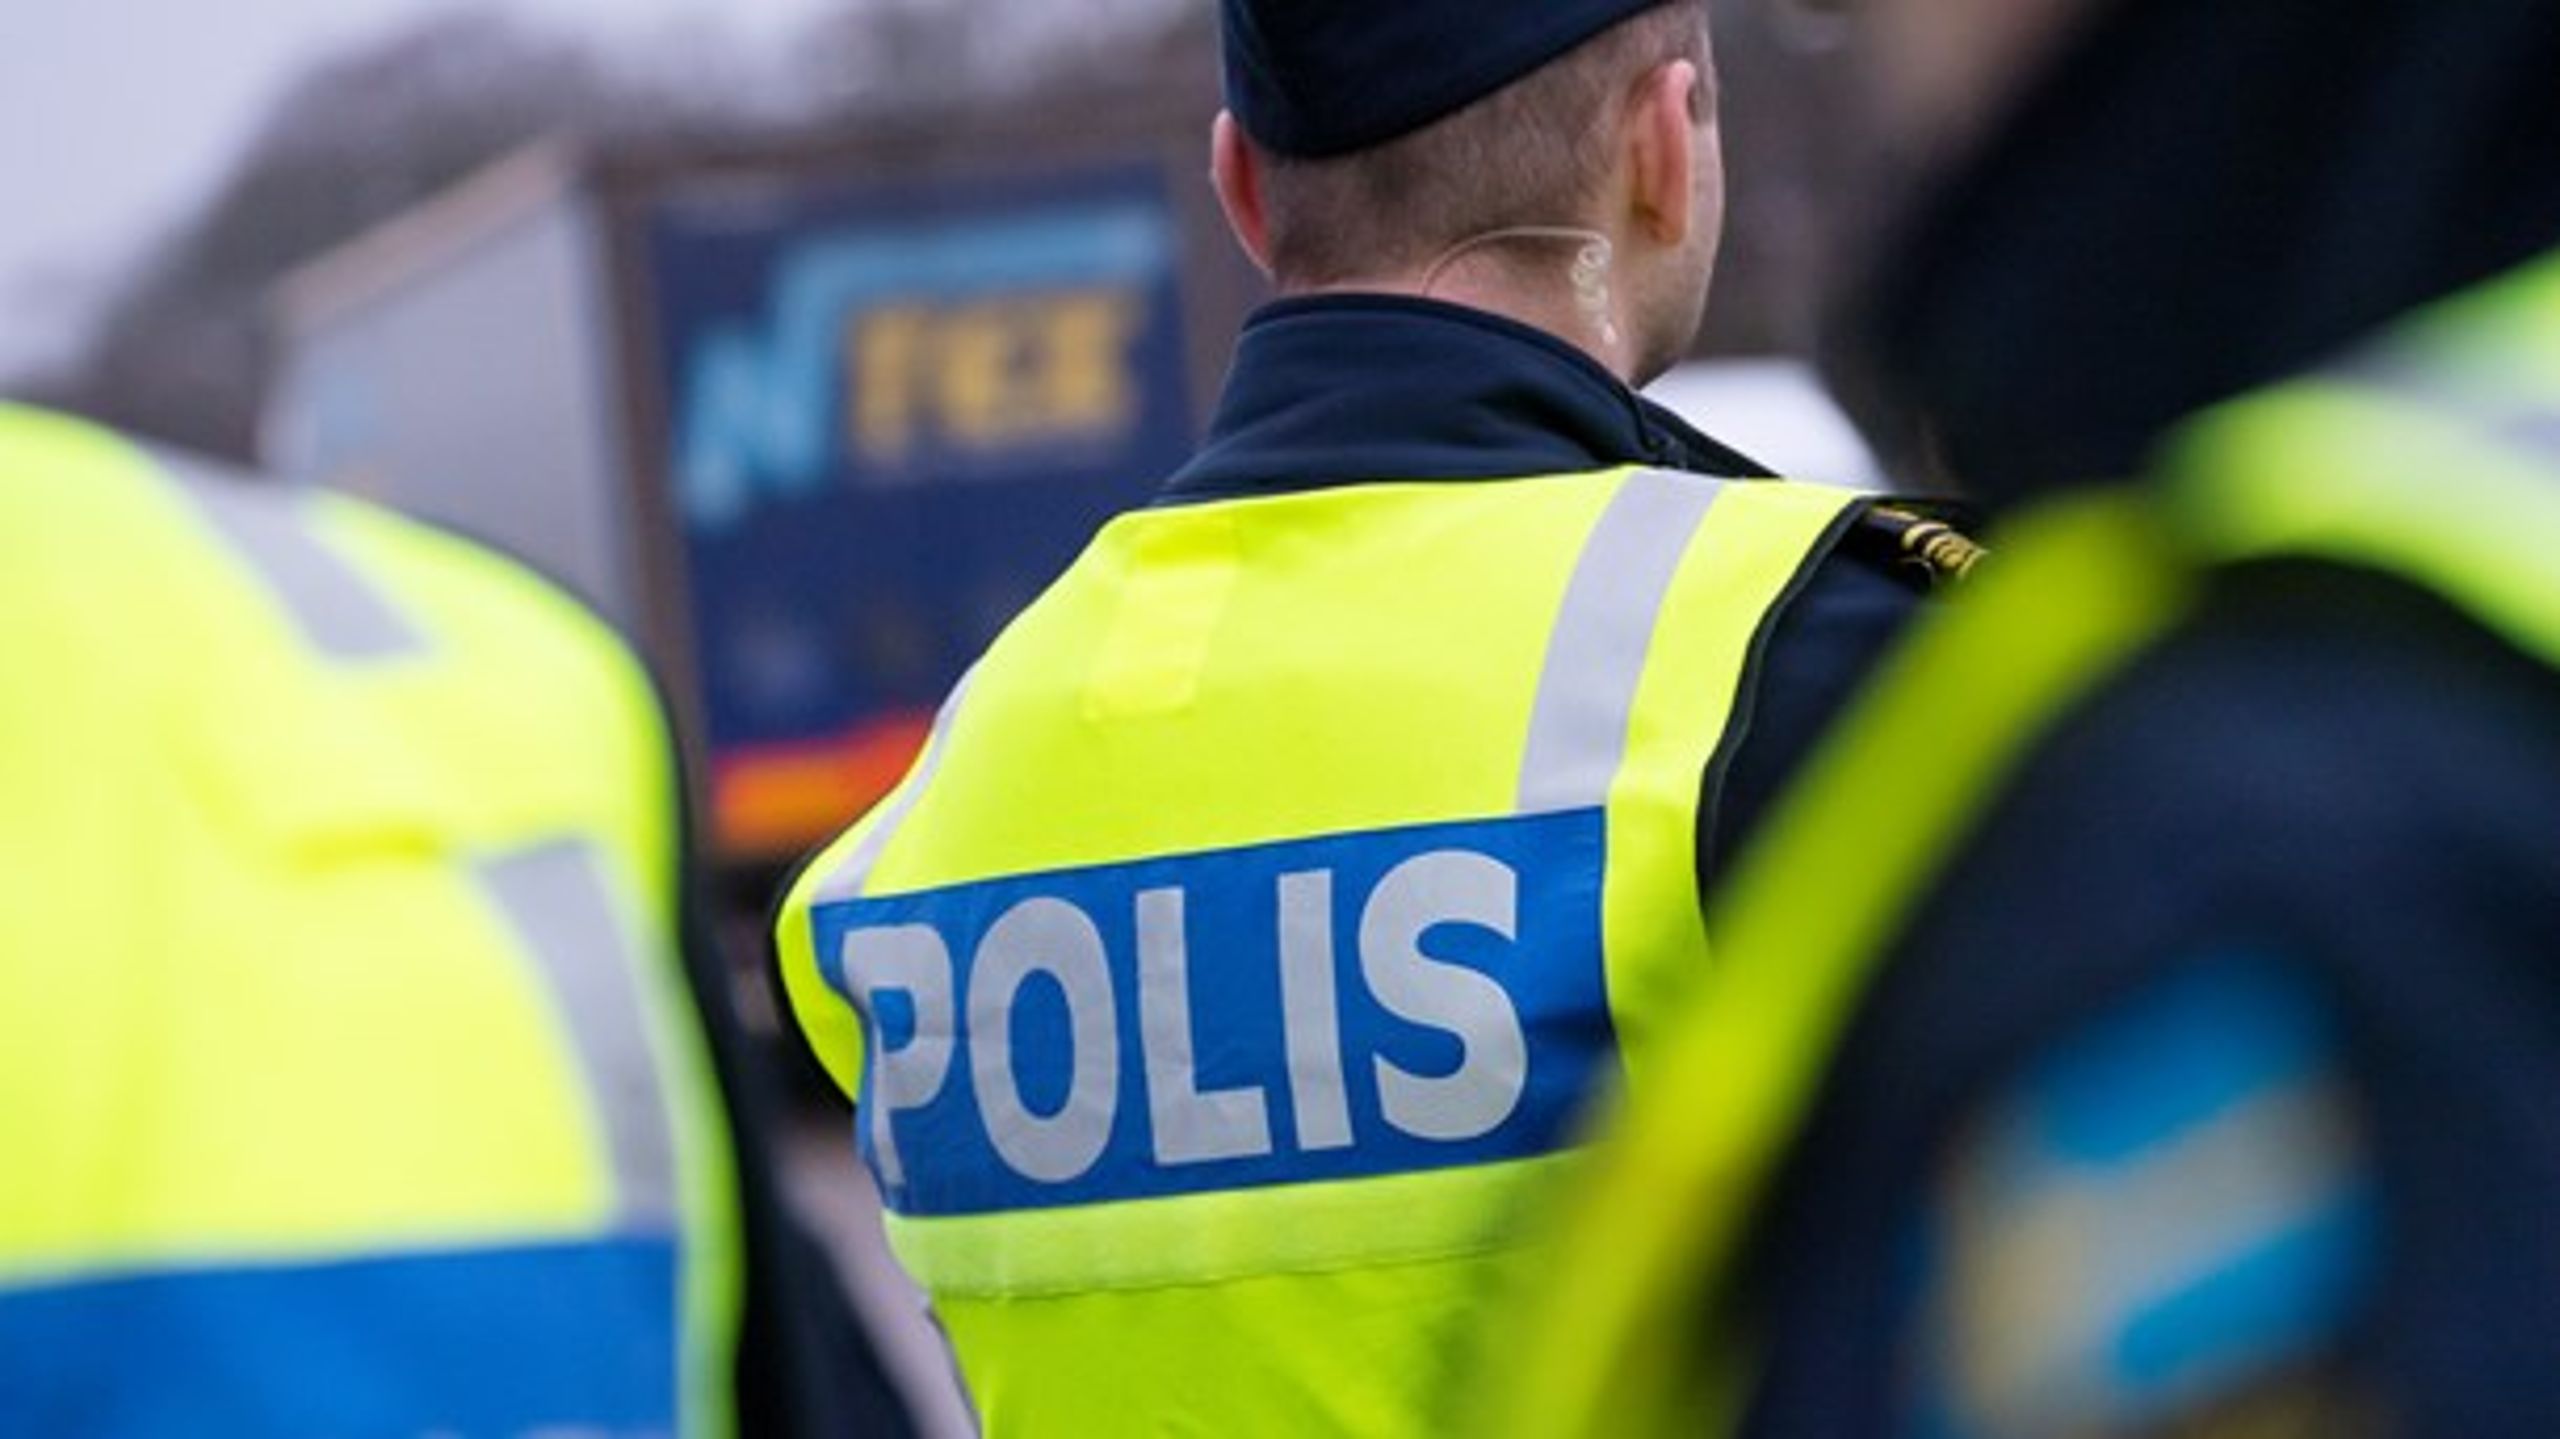 Regeringens förslag öppnar nu upp för att vilka personer som helst kan kontrolleras av polisen - även om man uppehåller sig i Sverige lagligt, skriver debattörerna.